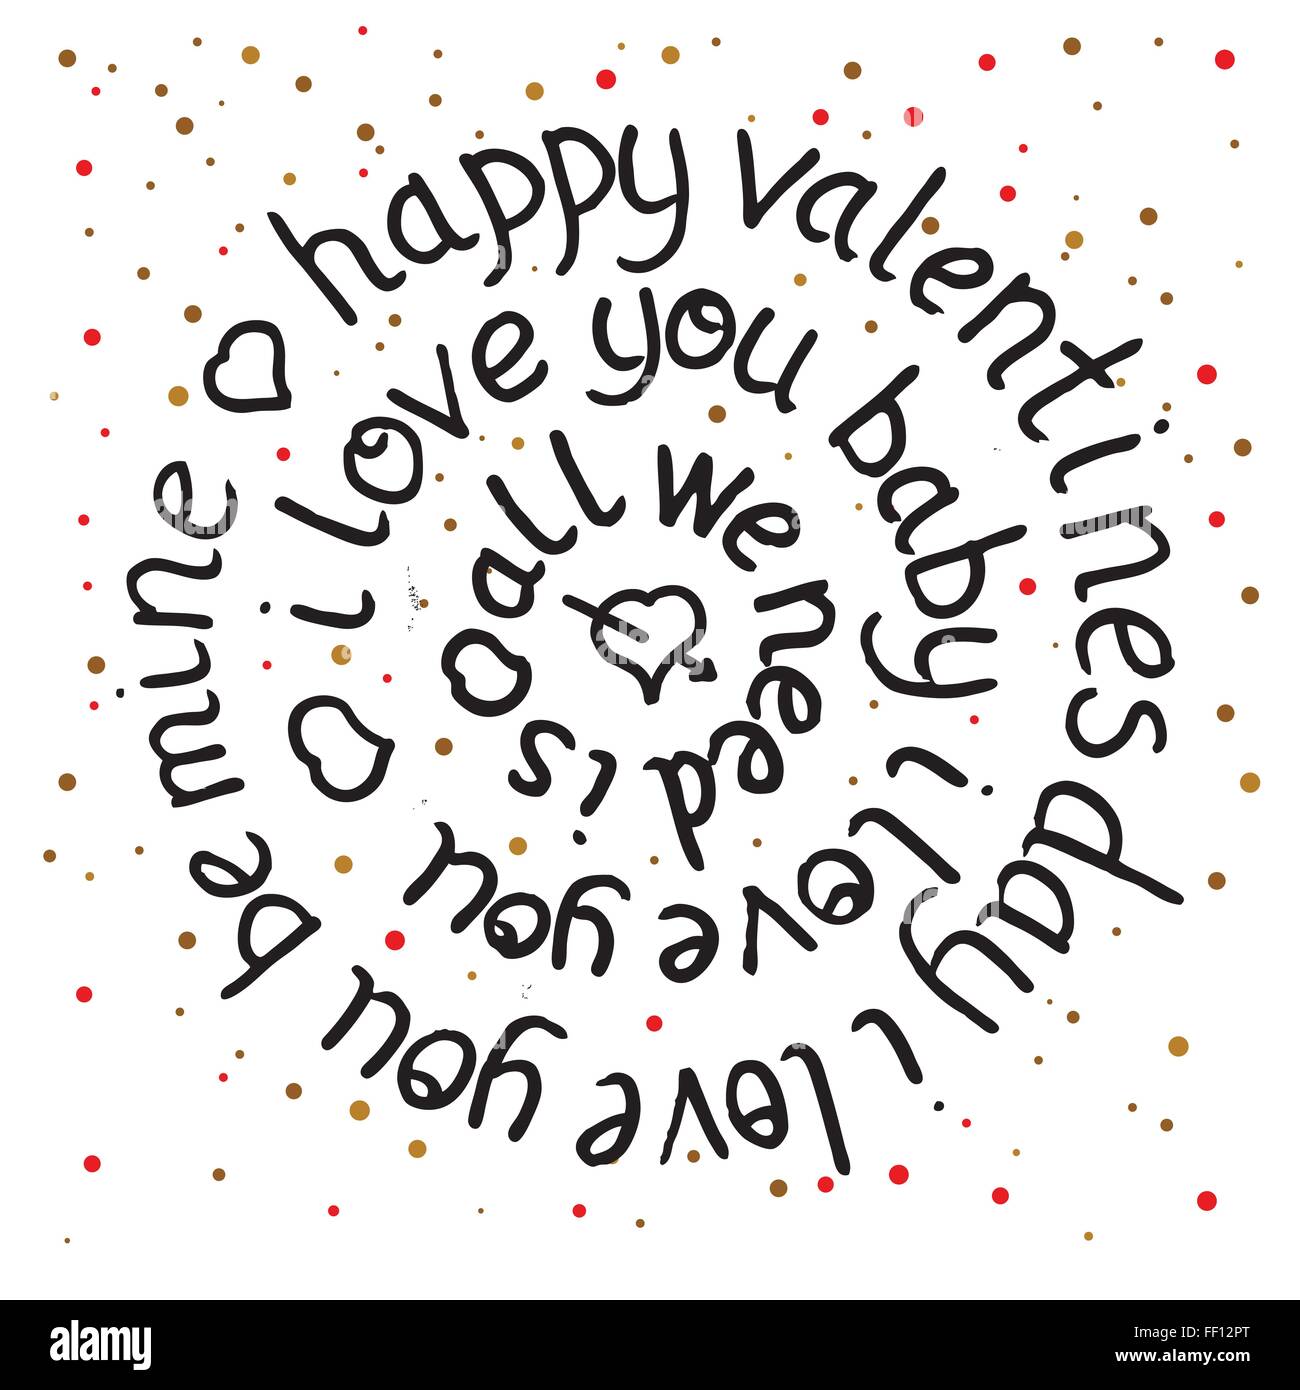 Valentines day tour le lettrage sur fond de points. Vector illustration. Tous nous avons besoin est l'amour. Je t'aime bébé. Happy valentines Illustration de Vecteur